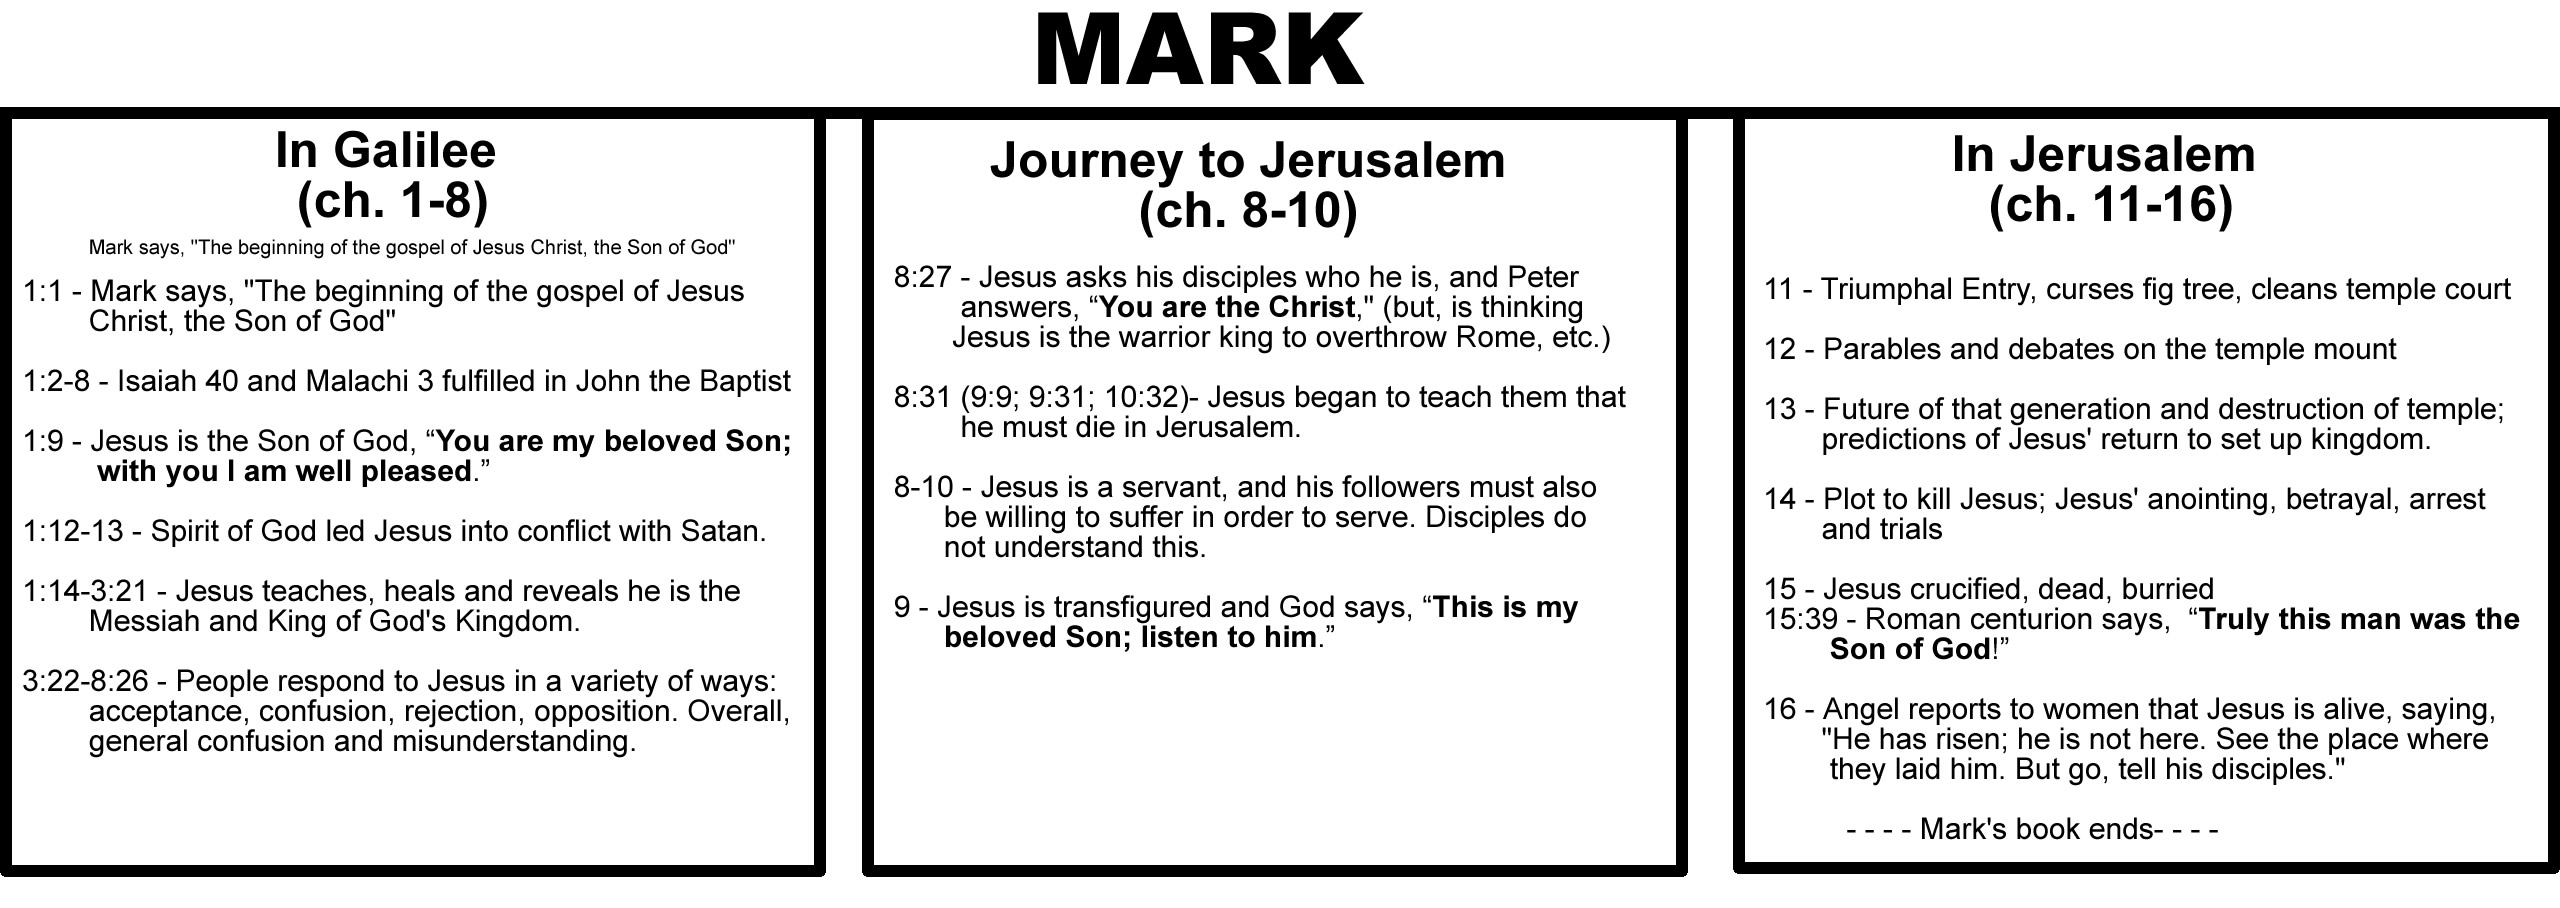 Outline of the Gospel of Mark